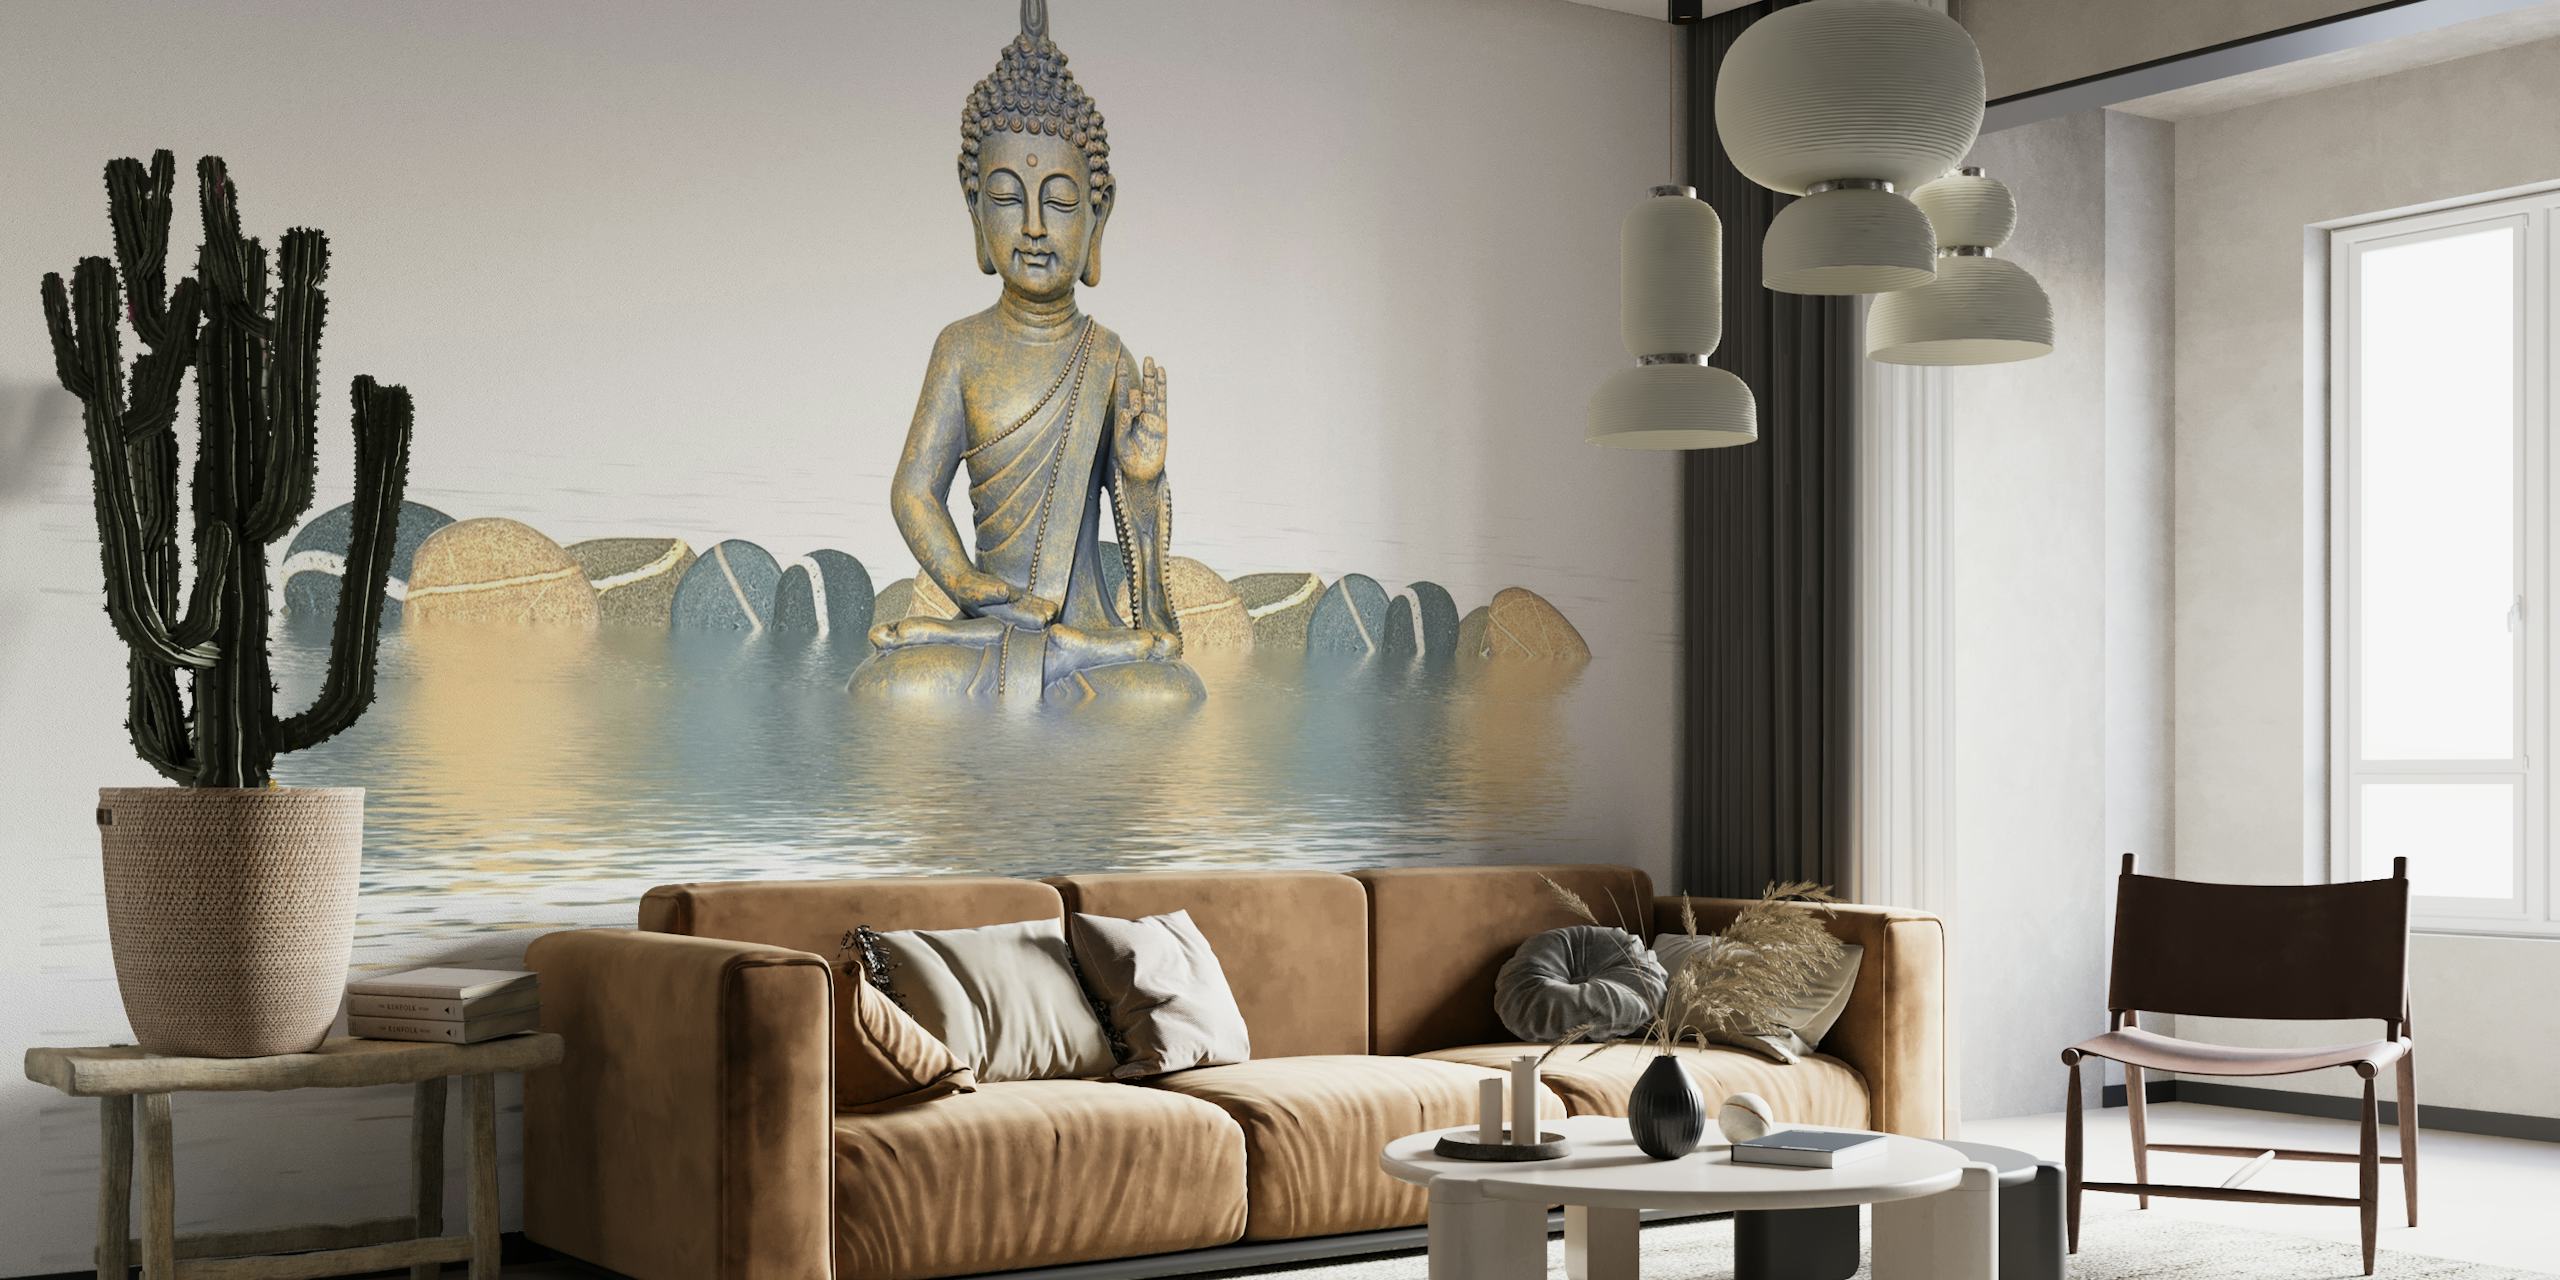 Zen Style Buddha papel pintado